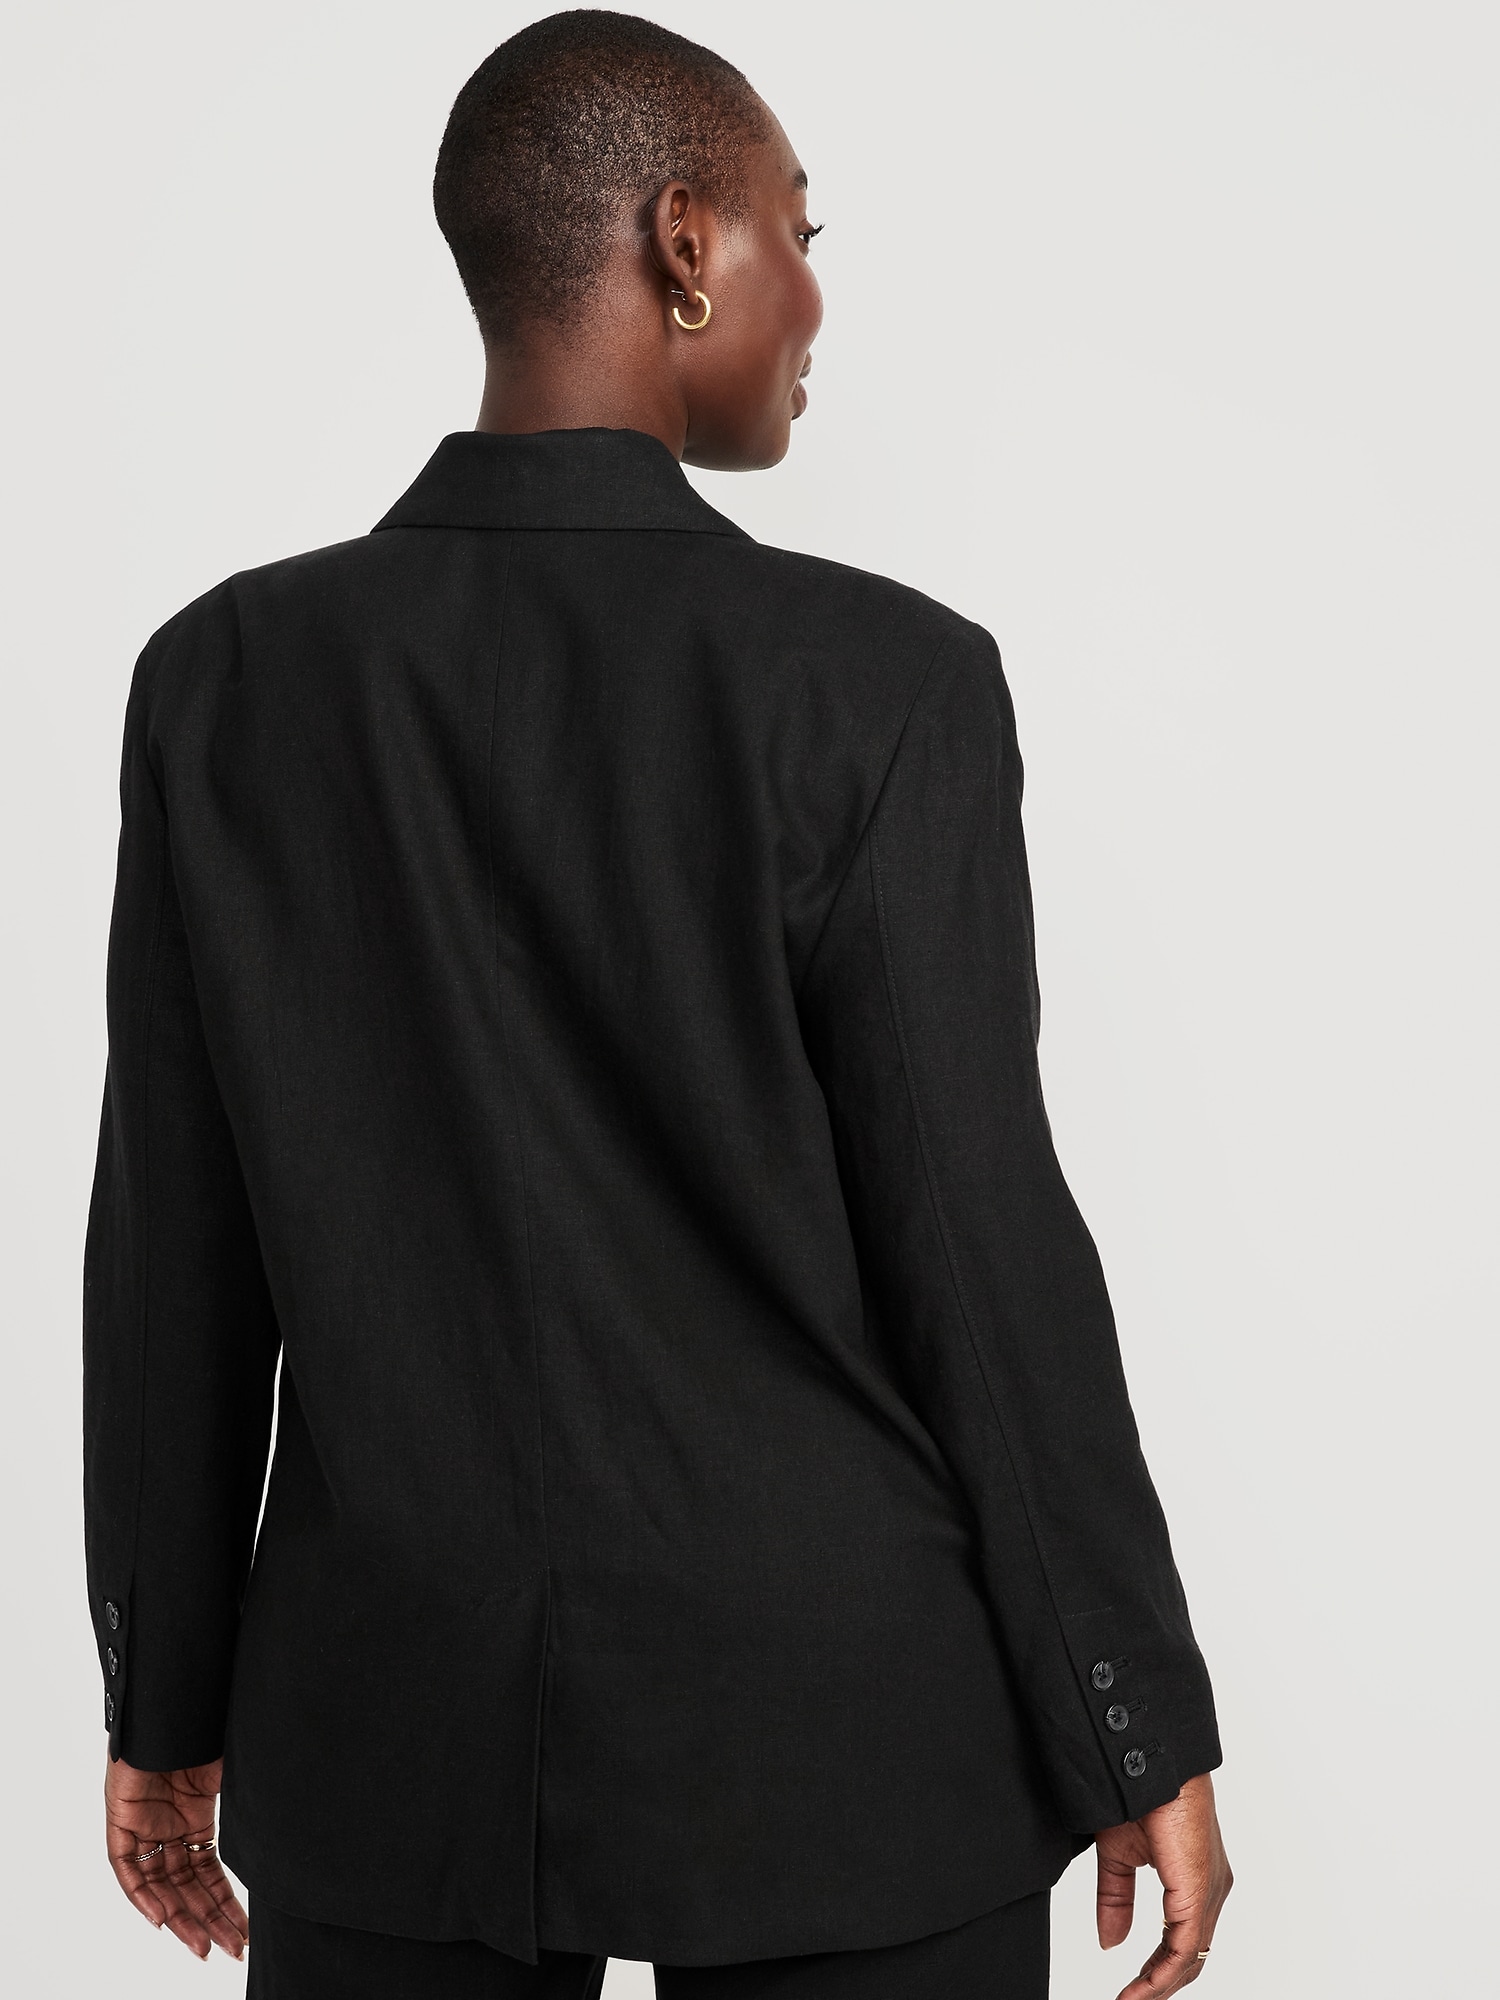 beloning zijde Terzijde Double-Breasted Linen-Blend Suit Blazer for Women | Old Navy